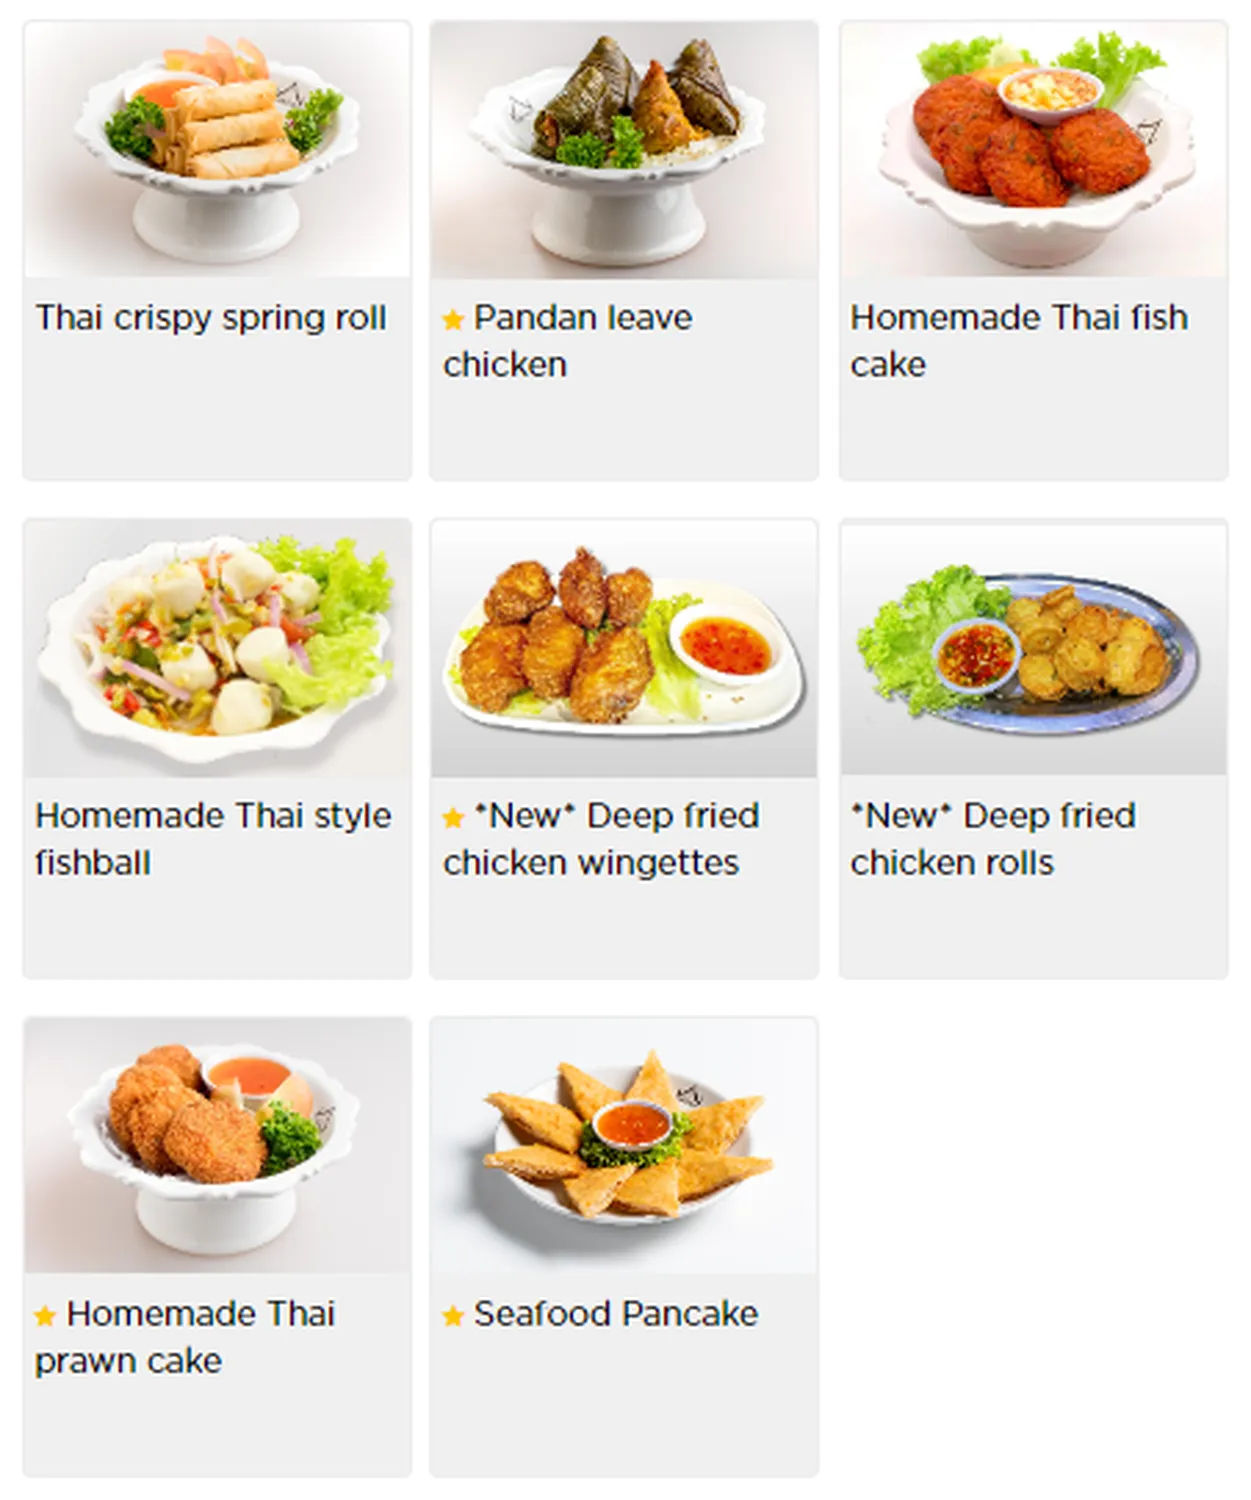 nakhon kitchen menu singapore appetizer